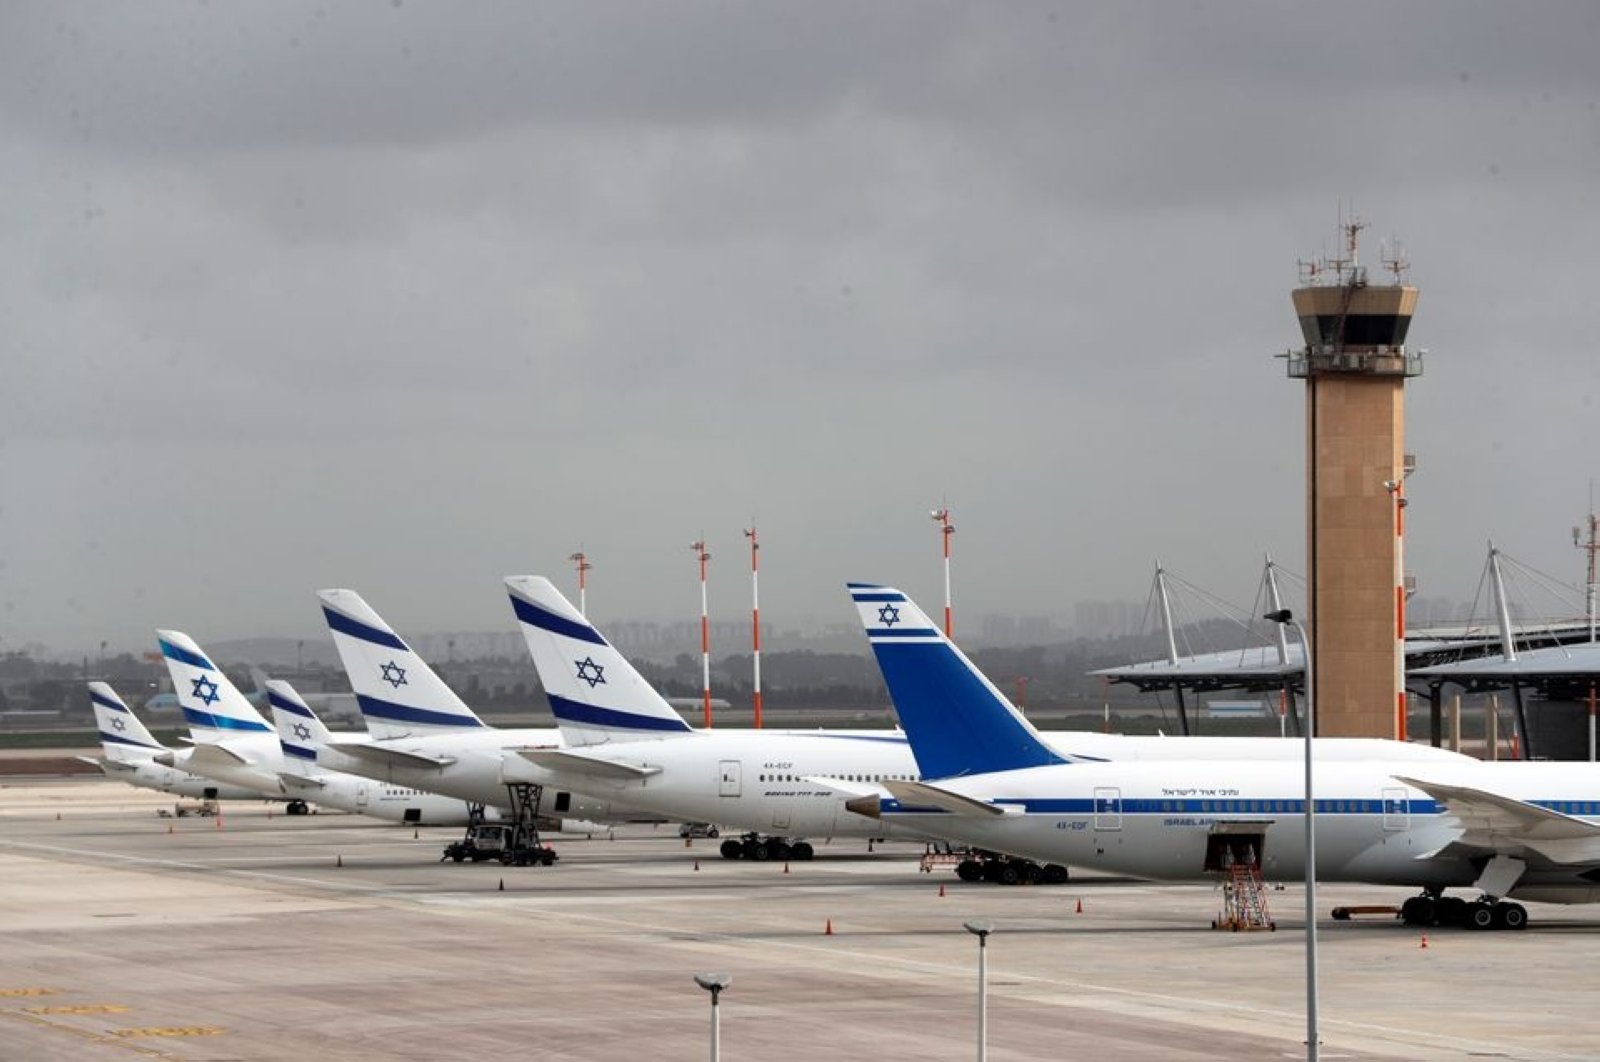 Pencabutan pembatasan penerbangan tidak ada hubungannya dengan hubungan Israel: Saudi FM